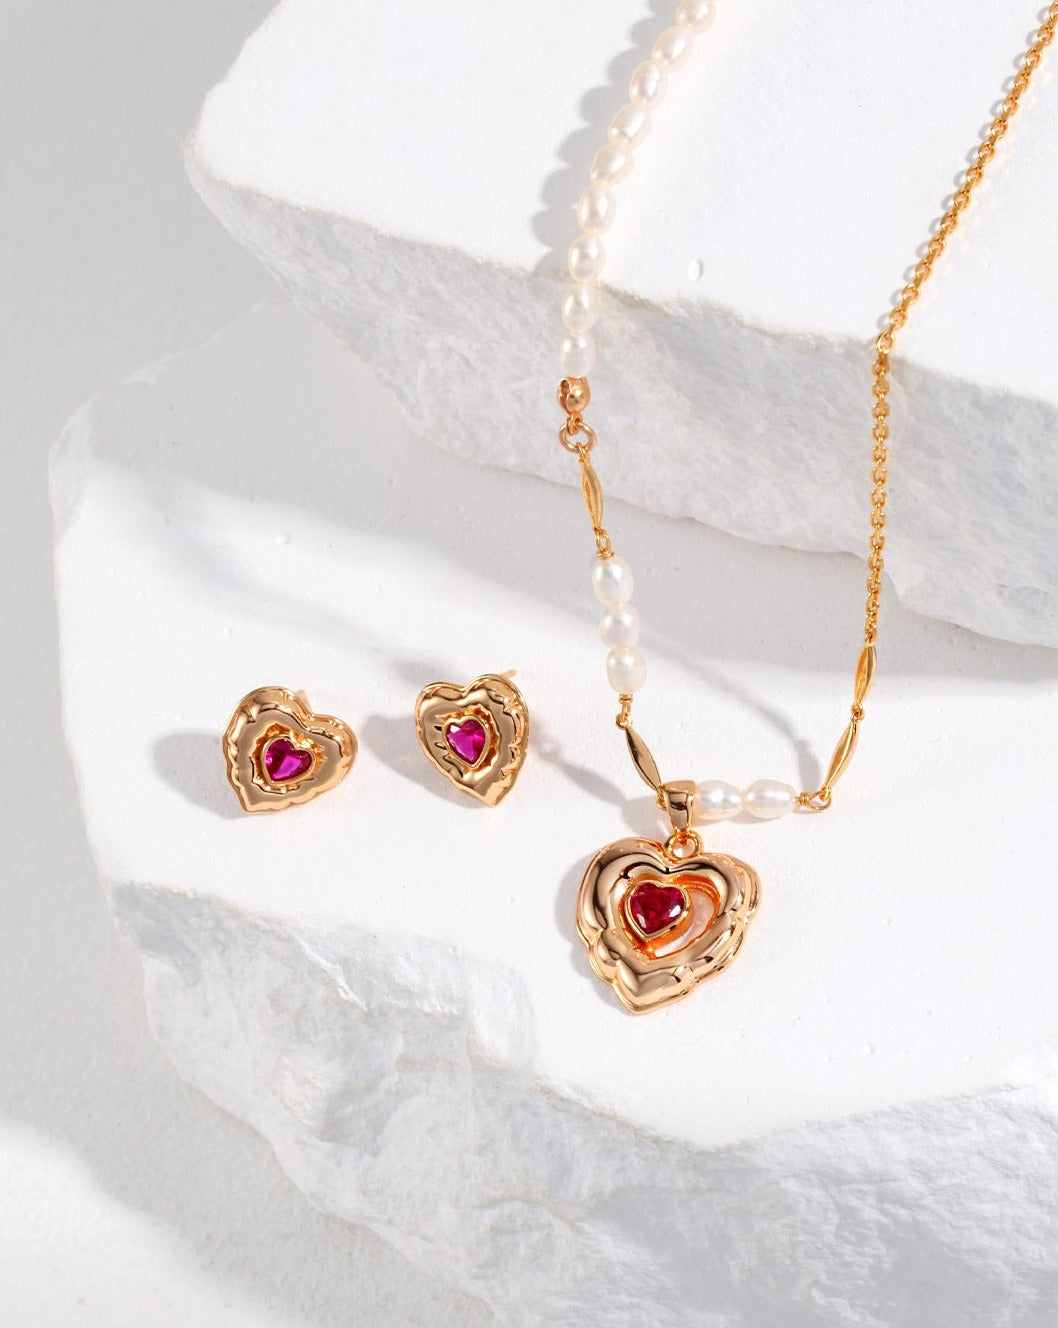 fashion-jewelry-minimalist-jewelry-design-jewelry-statement-necklace-pearl-earring-bracelet-rings-gold-coated-silver-bijoux-retro-gold-jewelry-heart-shape-earrings-jewelry-set